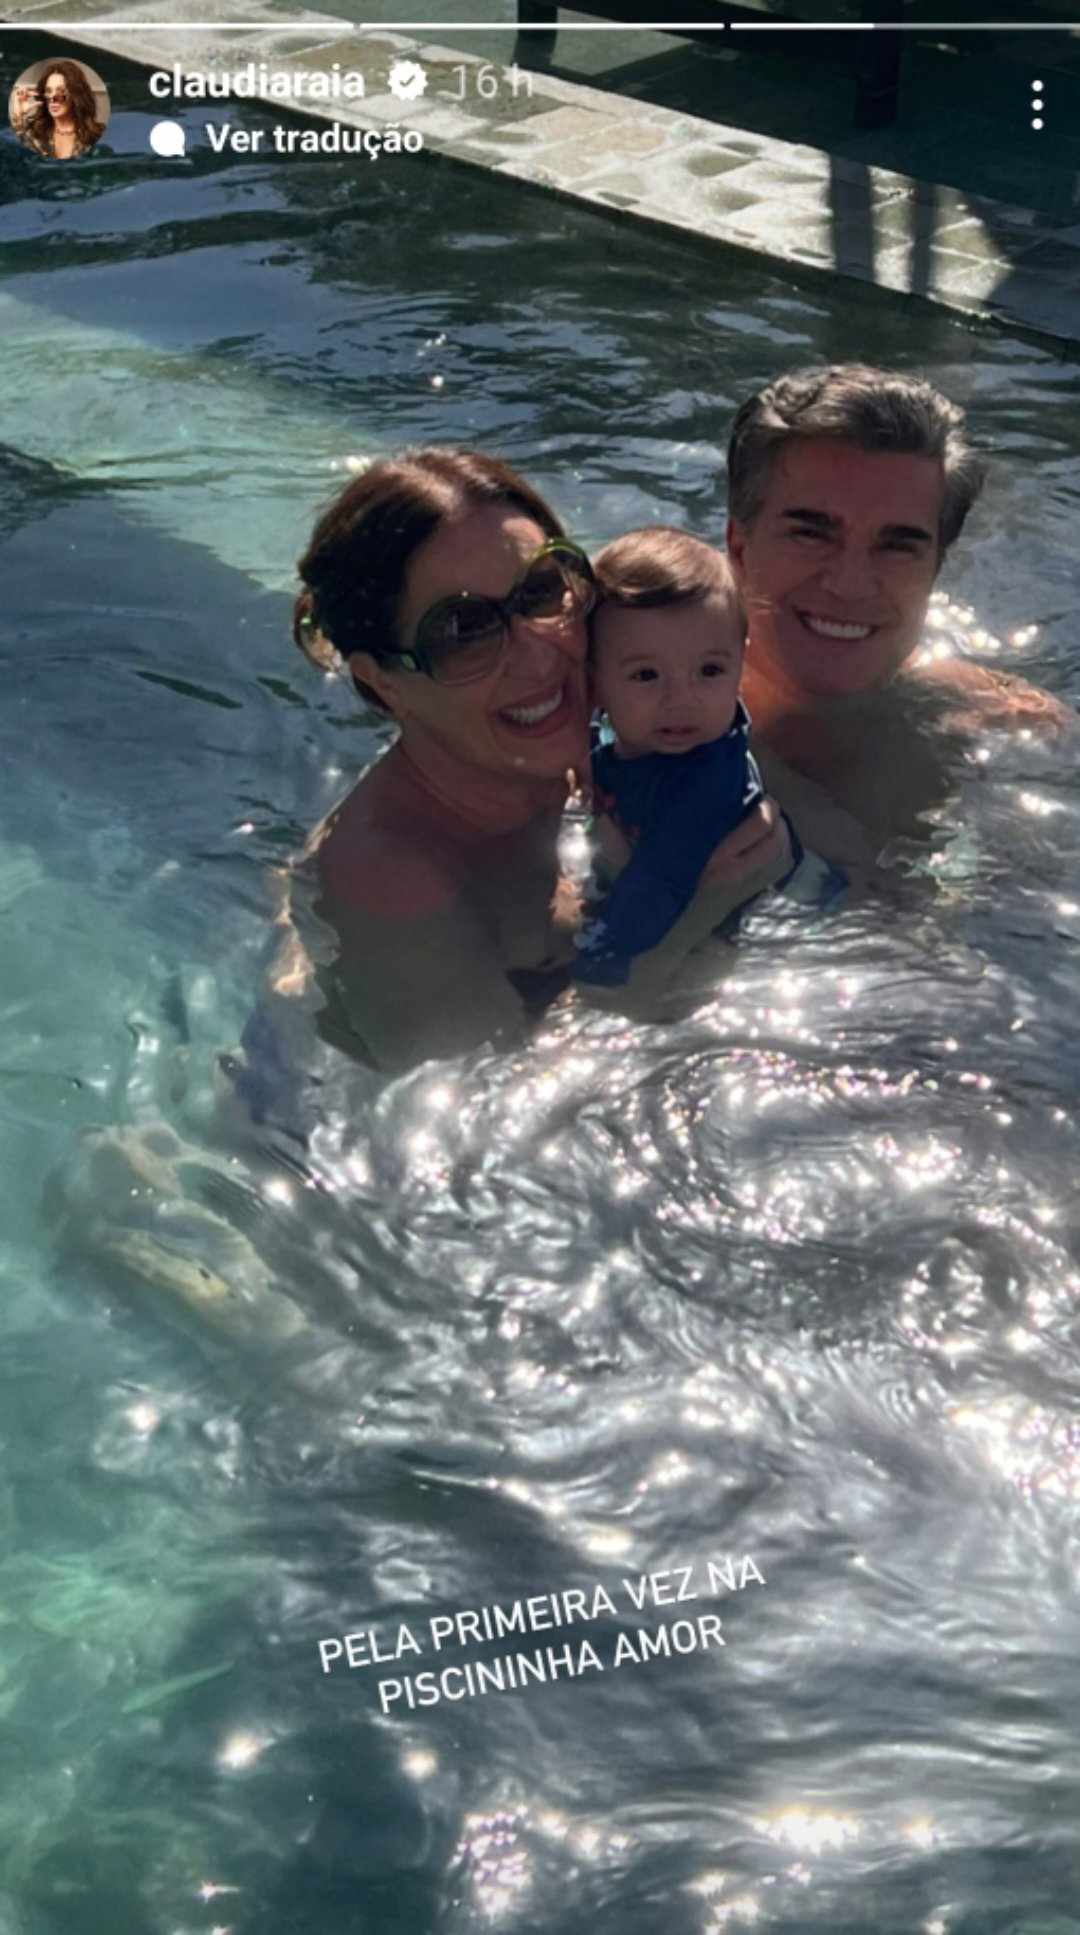 filho de Claudia Raia primeira vez na piscina